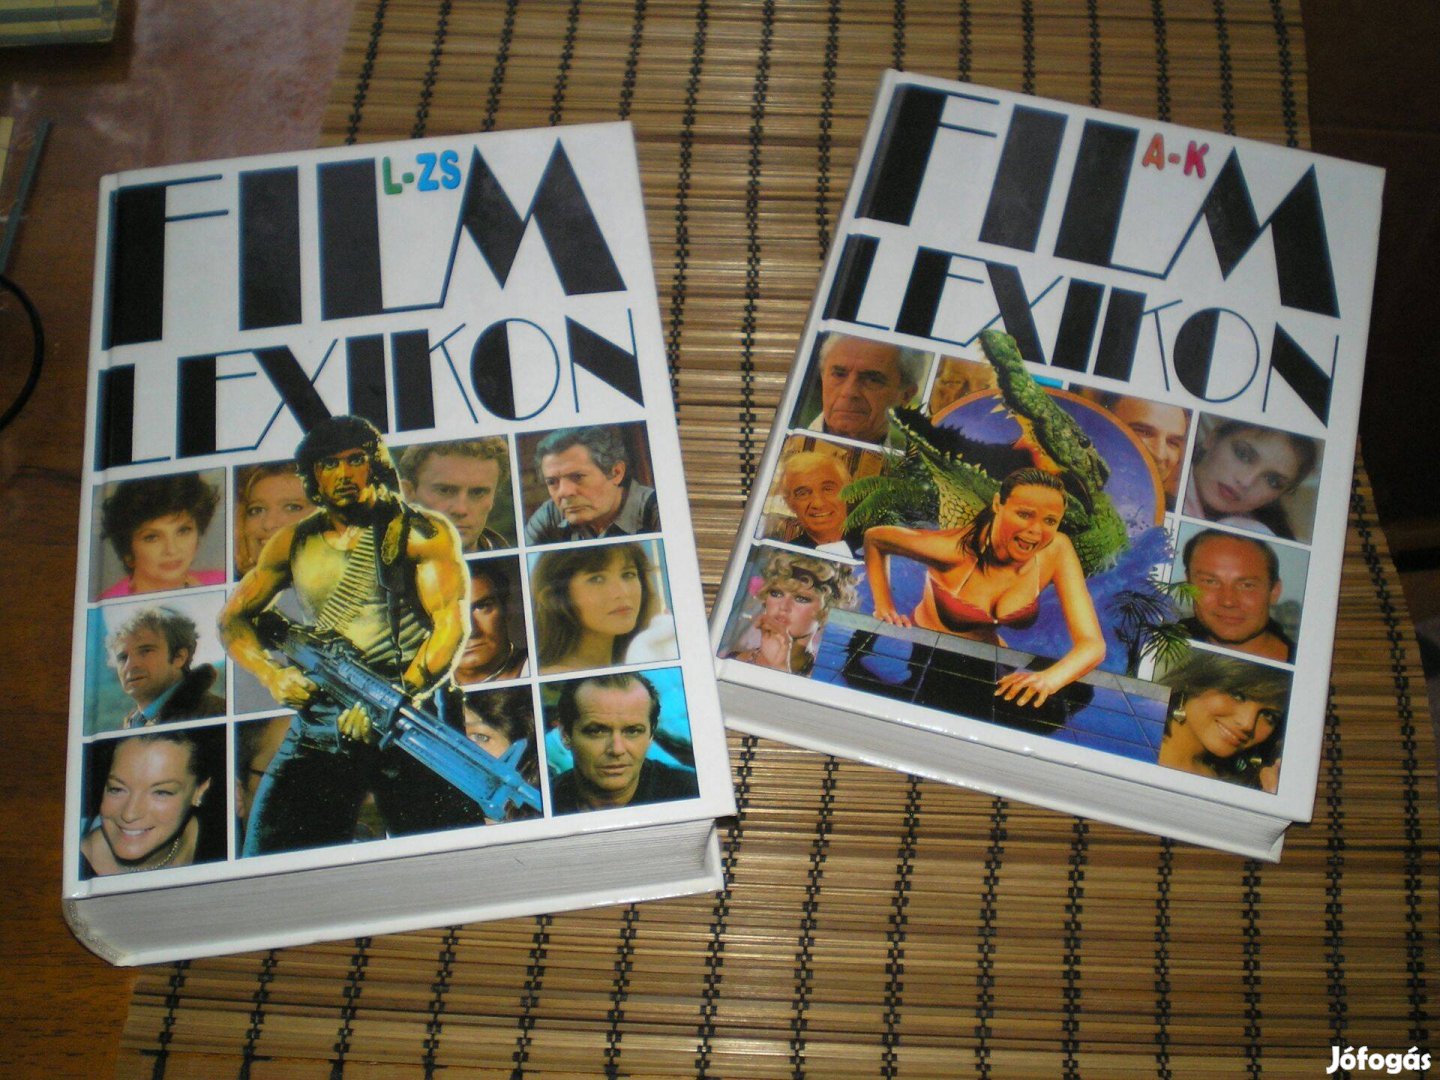 Film Lexikon A-K és L-ZS-ig 2 kötet 1994-ből ár/db